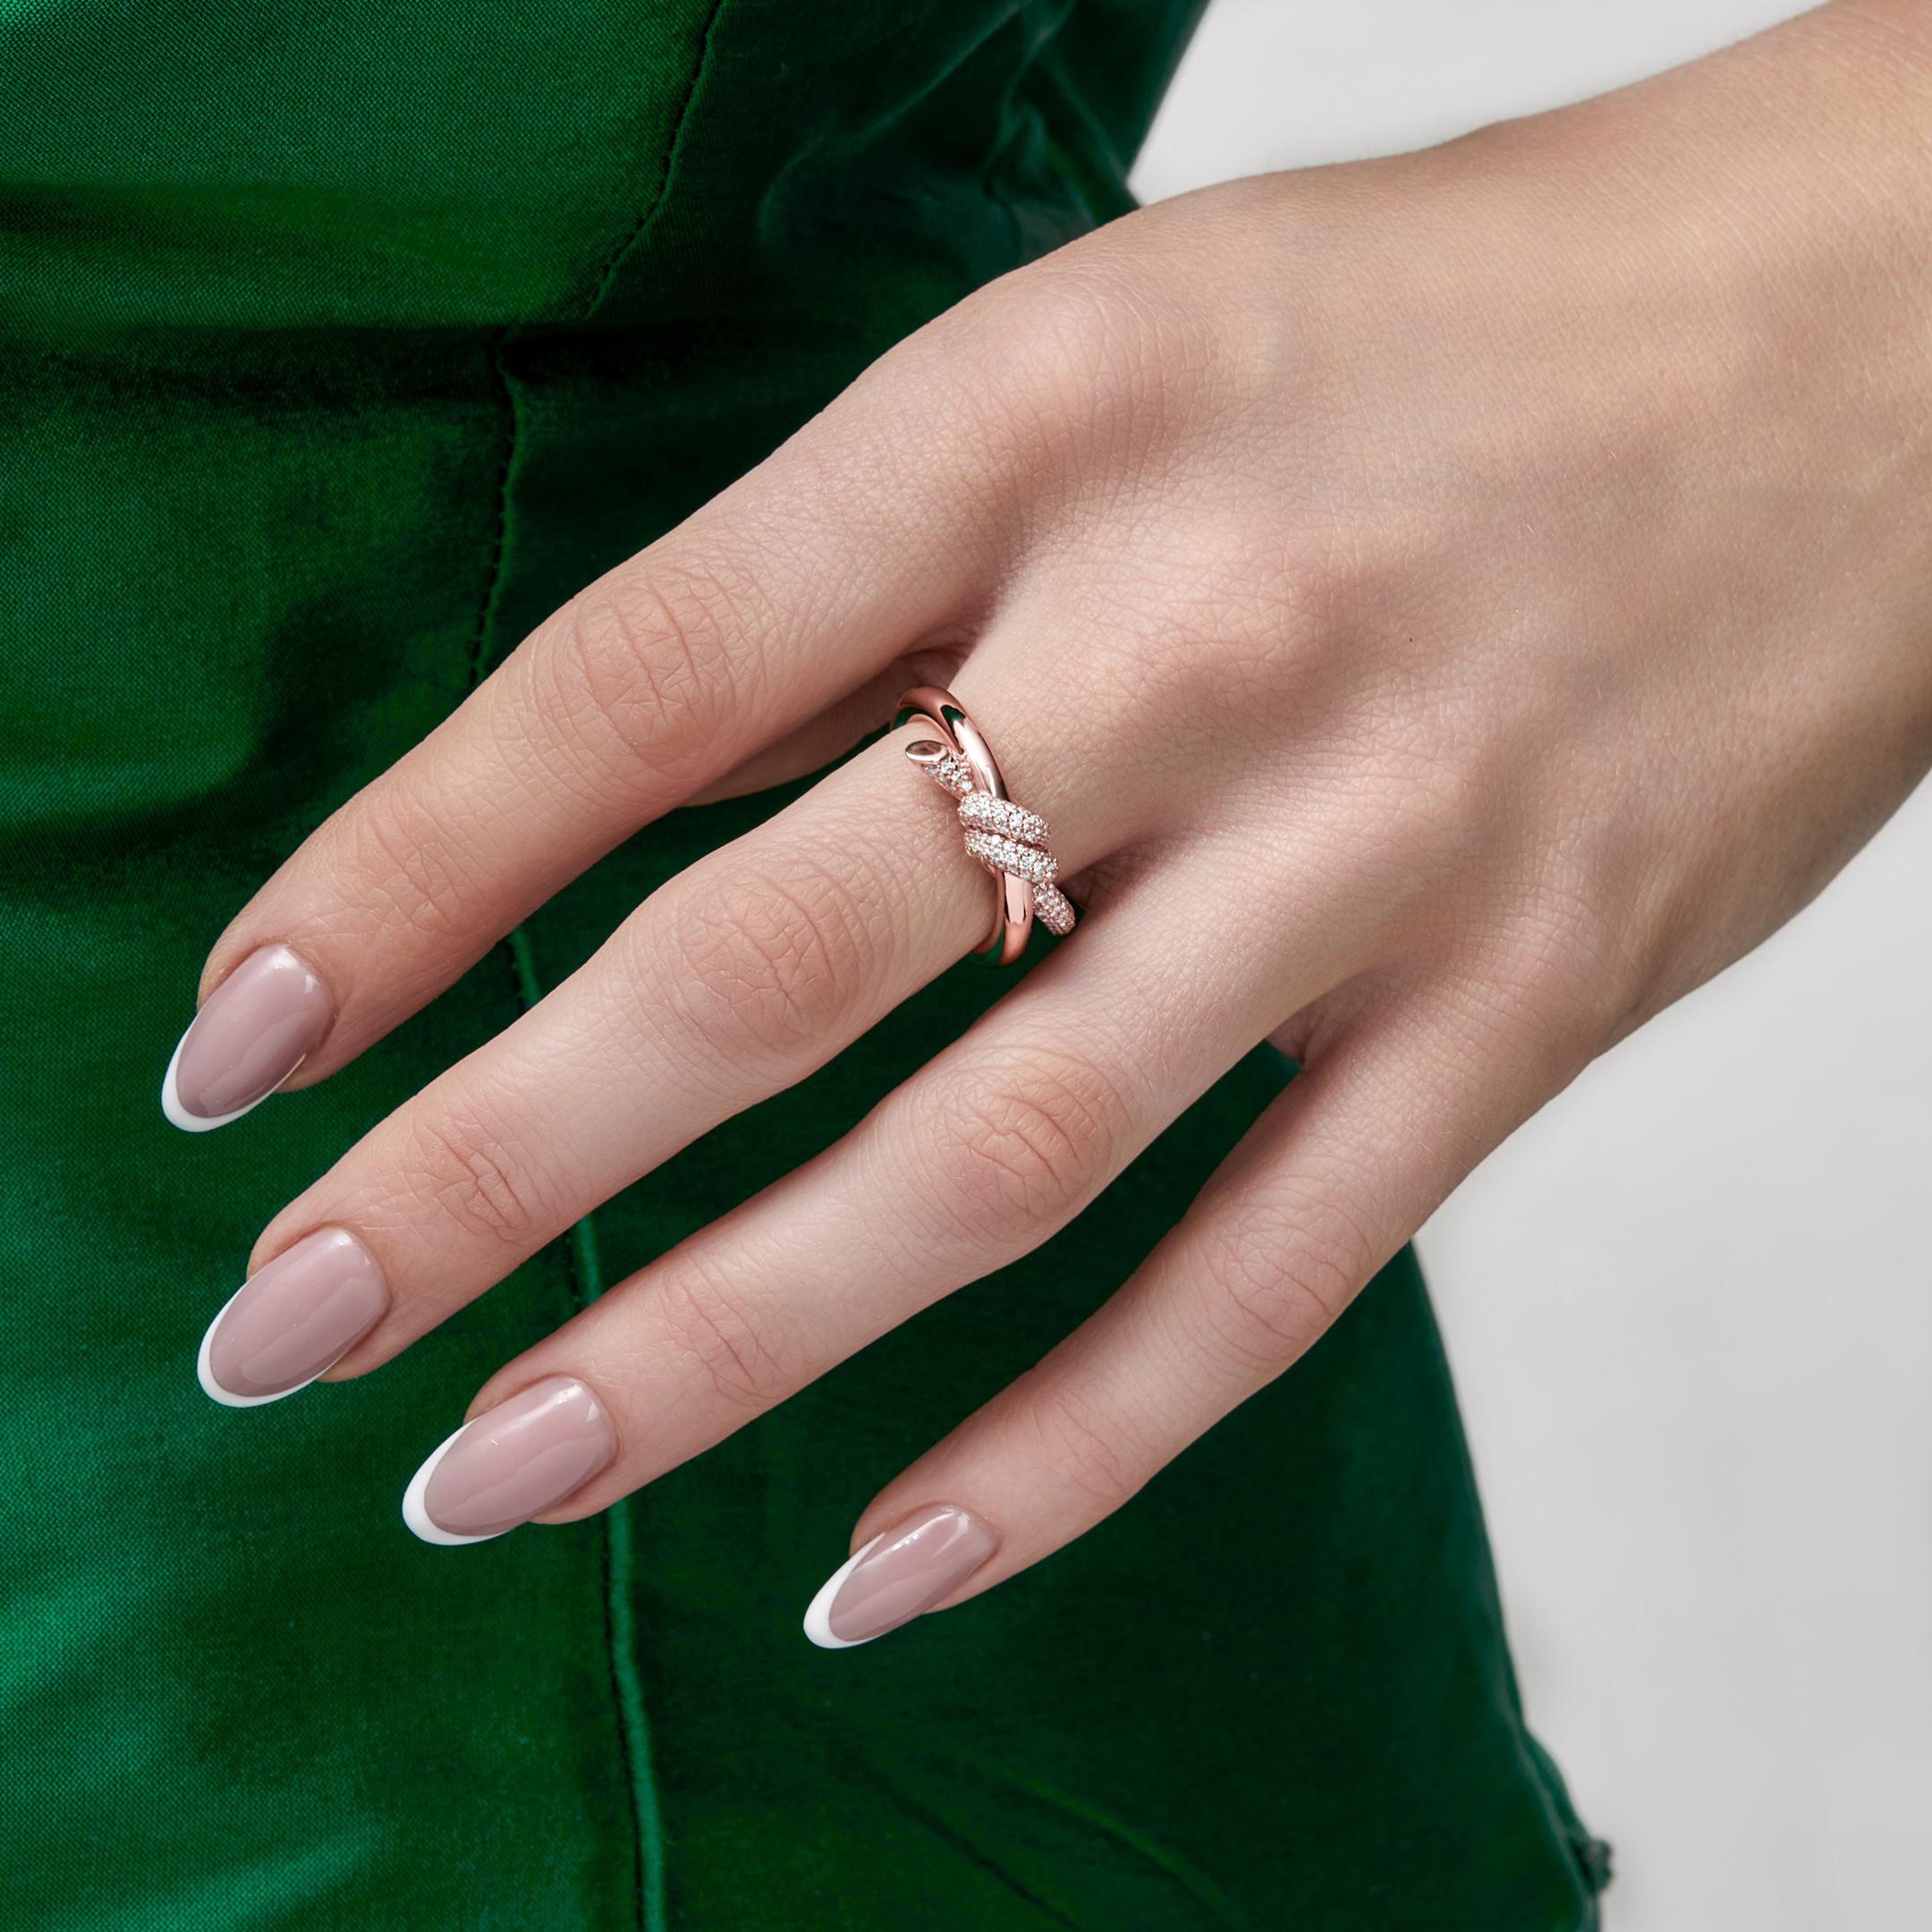 Erhöhen Sie Ihren Stil mit der Tiffany & Co. Zweireihiger Knotenring aus Roségold mit Diamanten. Sein verschlungenes Design symbolisiert die Stärke menschlicher Verbindungen. Jeder runde Brillant, der sorgfältig ausgewählt wurde, um den